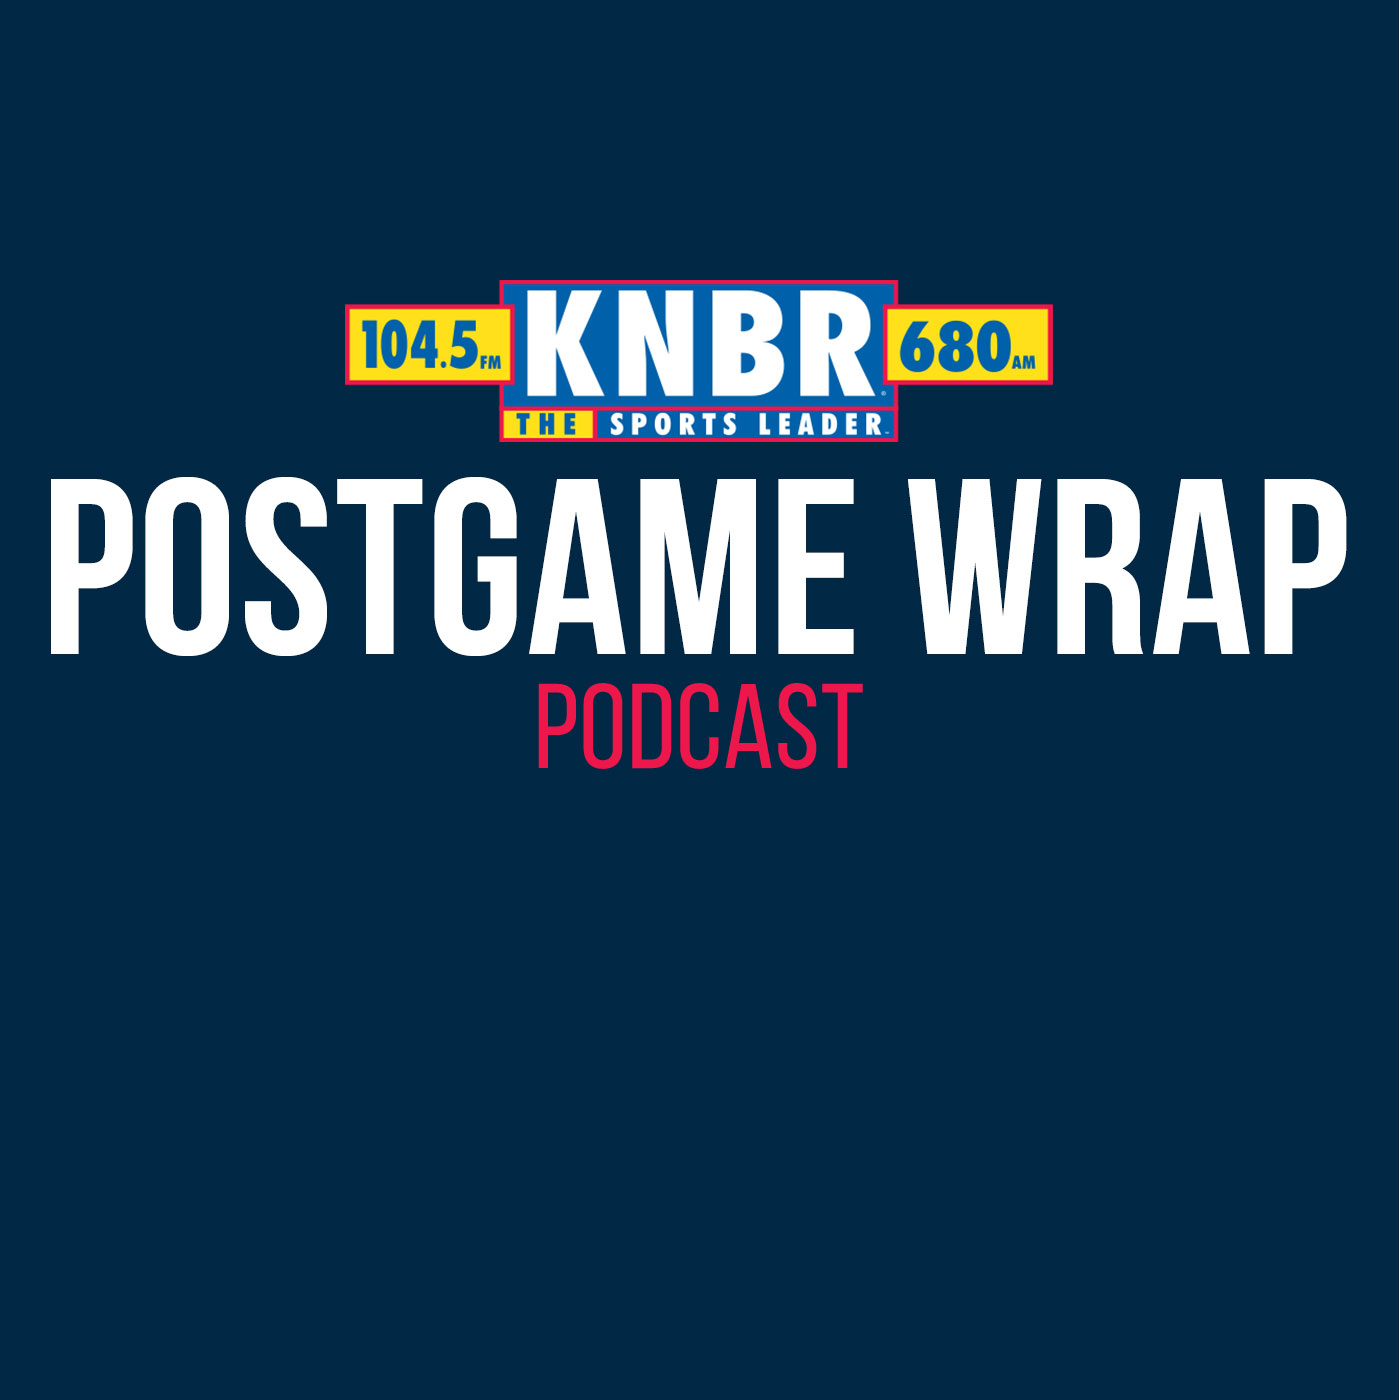 5-22 Postgame Wrap: Giants 9, Pirates 5